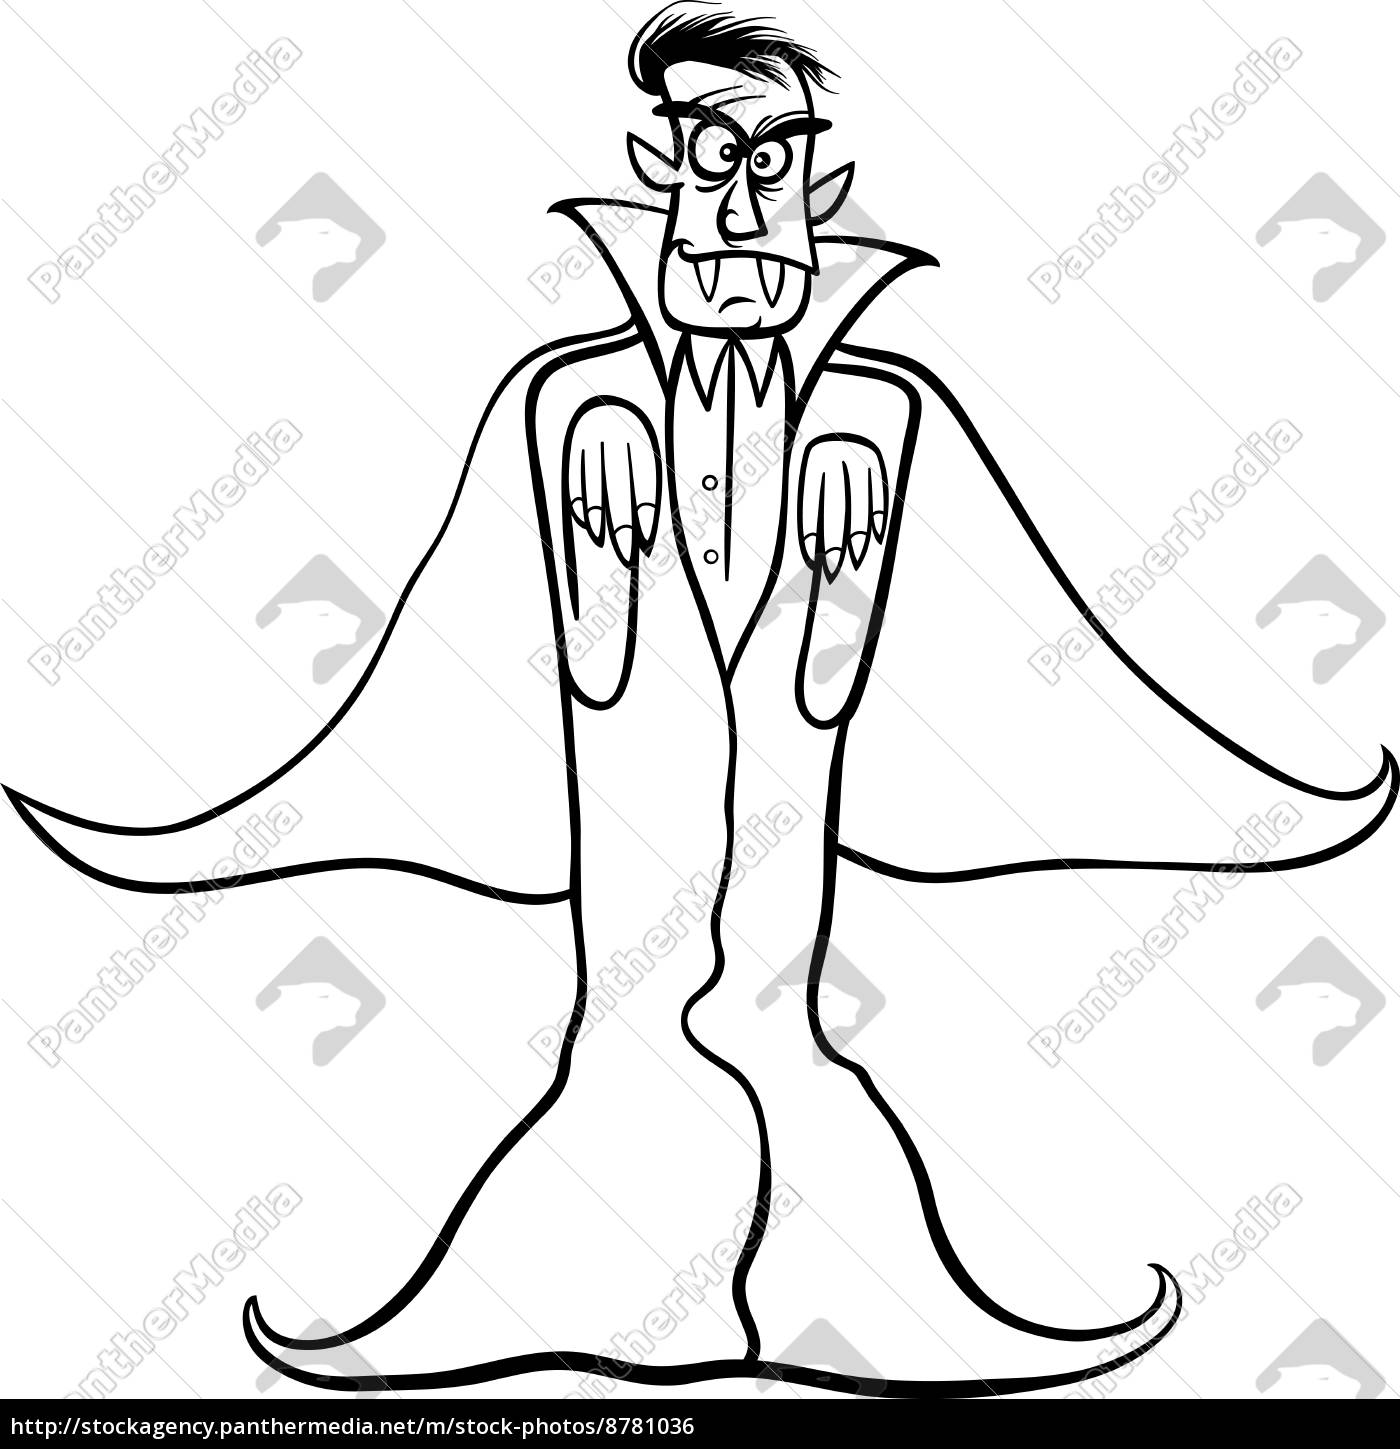 Imagem de desenho animado de um vampiro